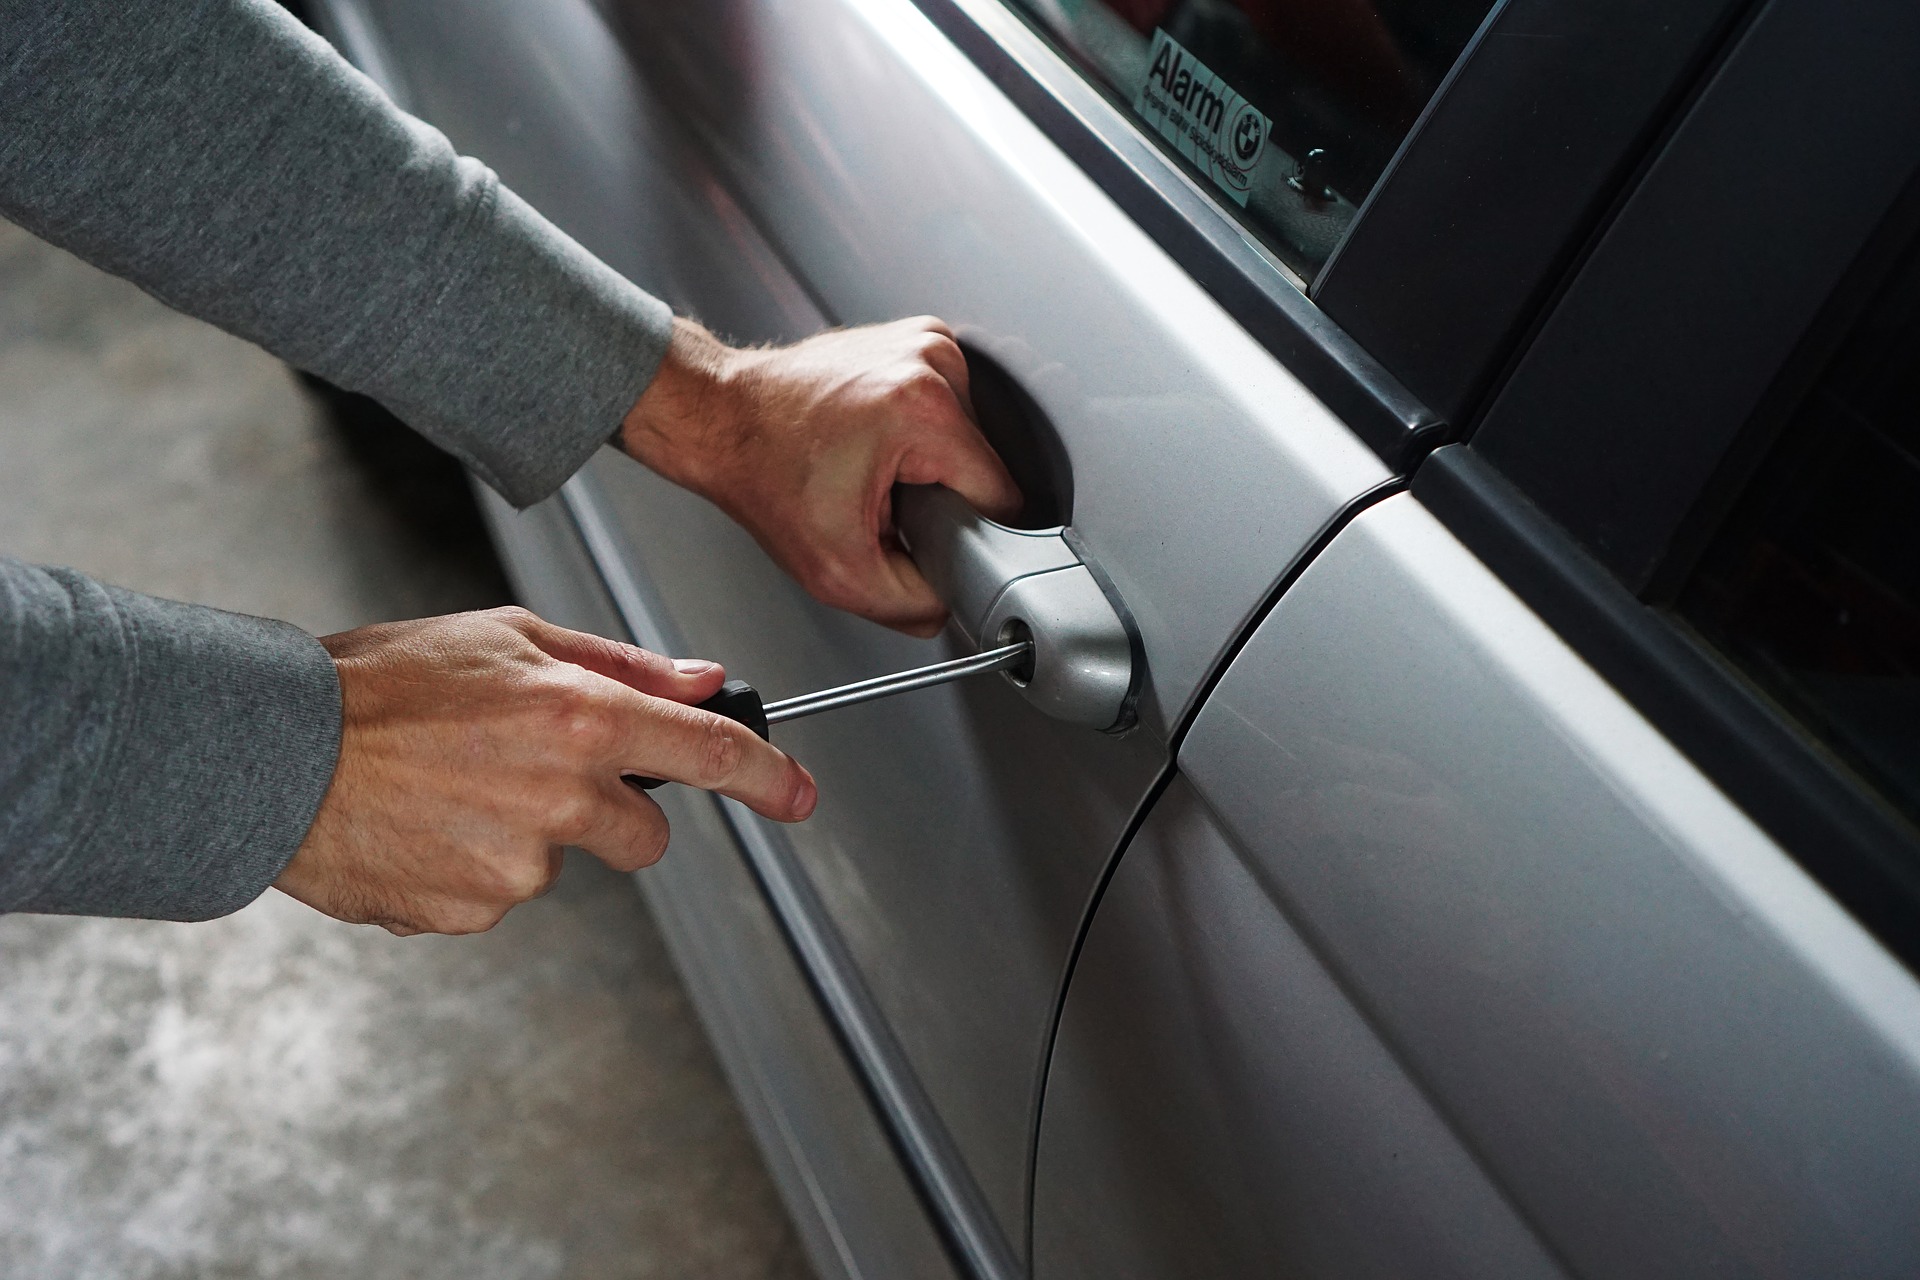 Verzekering hoeft draagbare gestolen luxe spullen uit je auto niet te vergoeden